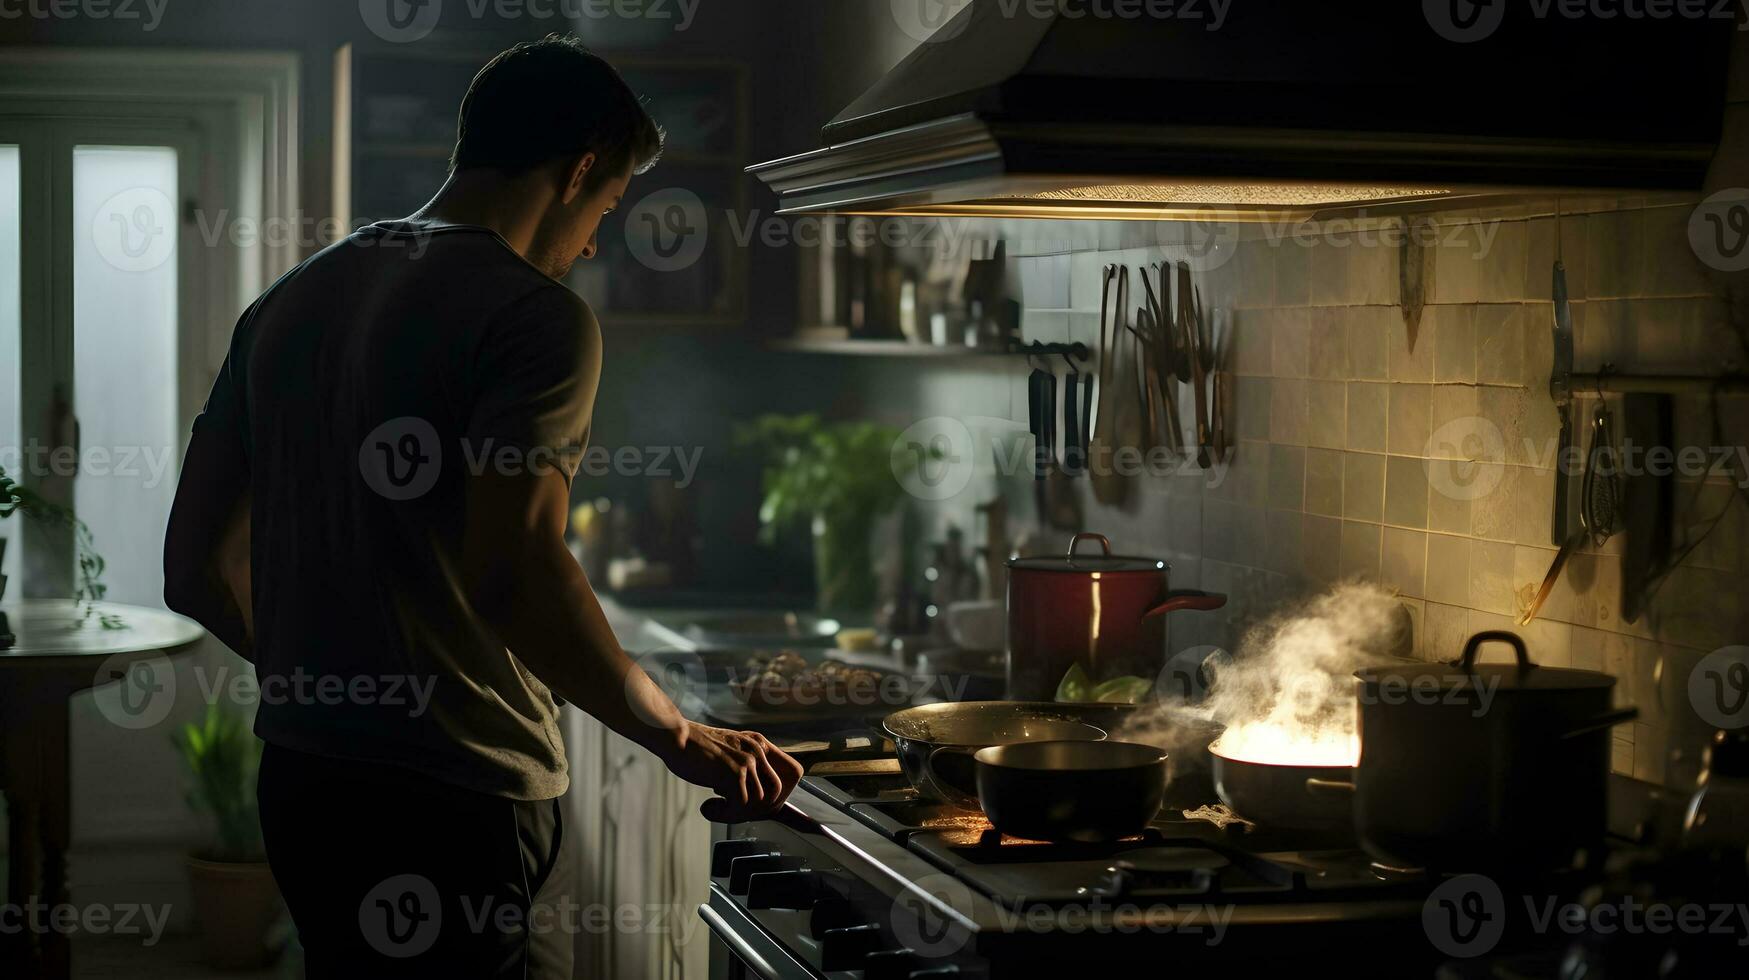 joven hombre Cocinando en el cocina a noche, él es preparando comida foto